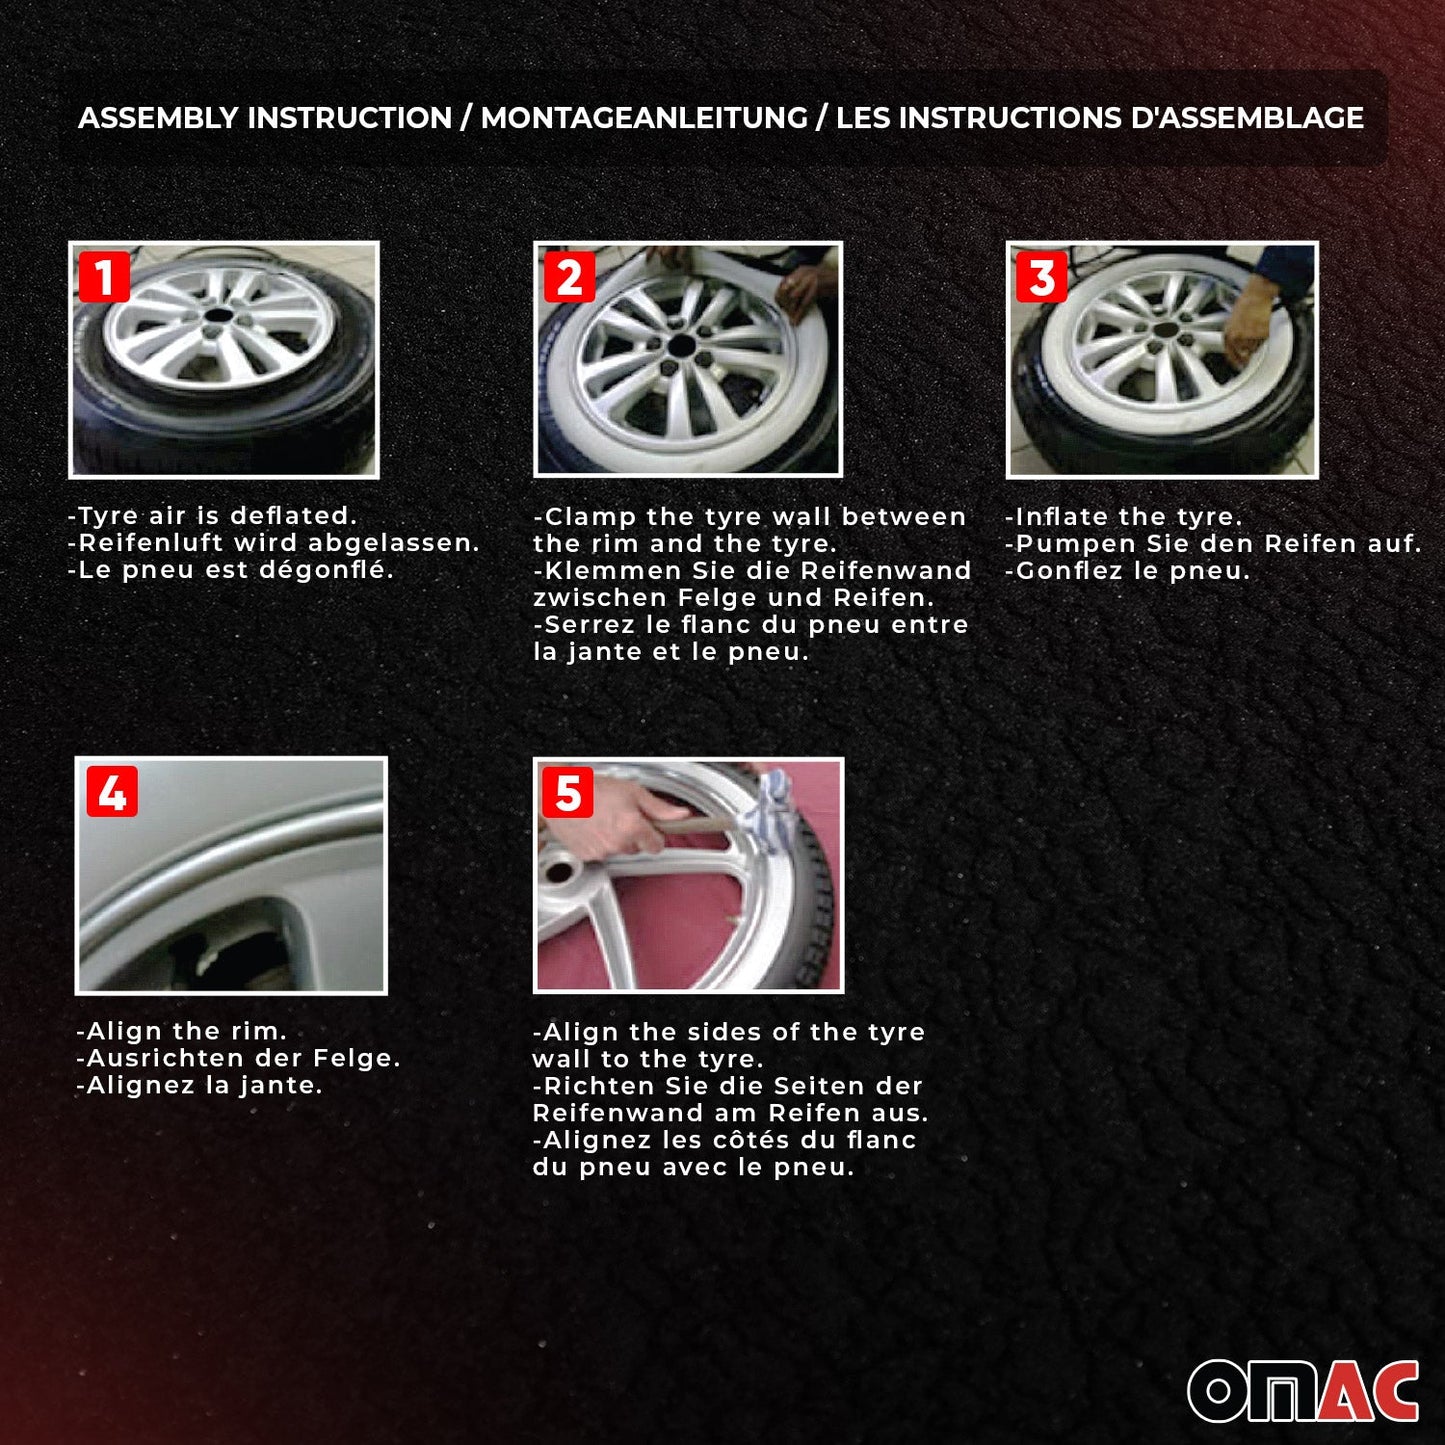 OMAC 16" Tire Wall Portawall Rims Sidewall Rubber Ring for Mitsubishi Set White 4x U023809